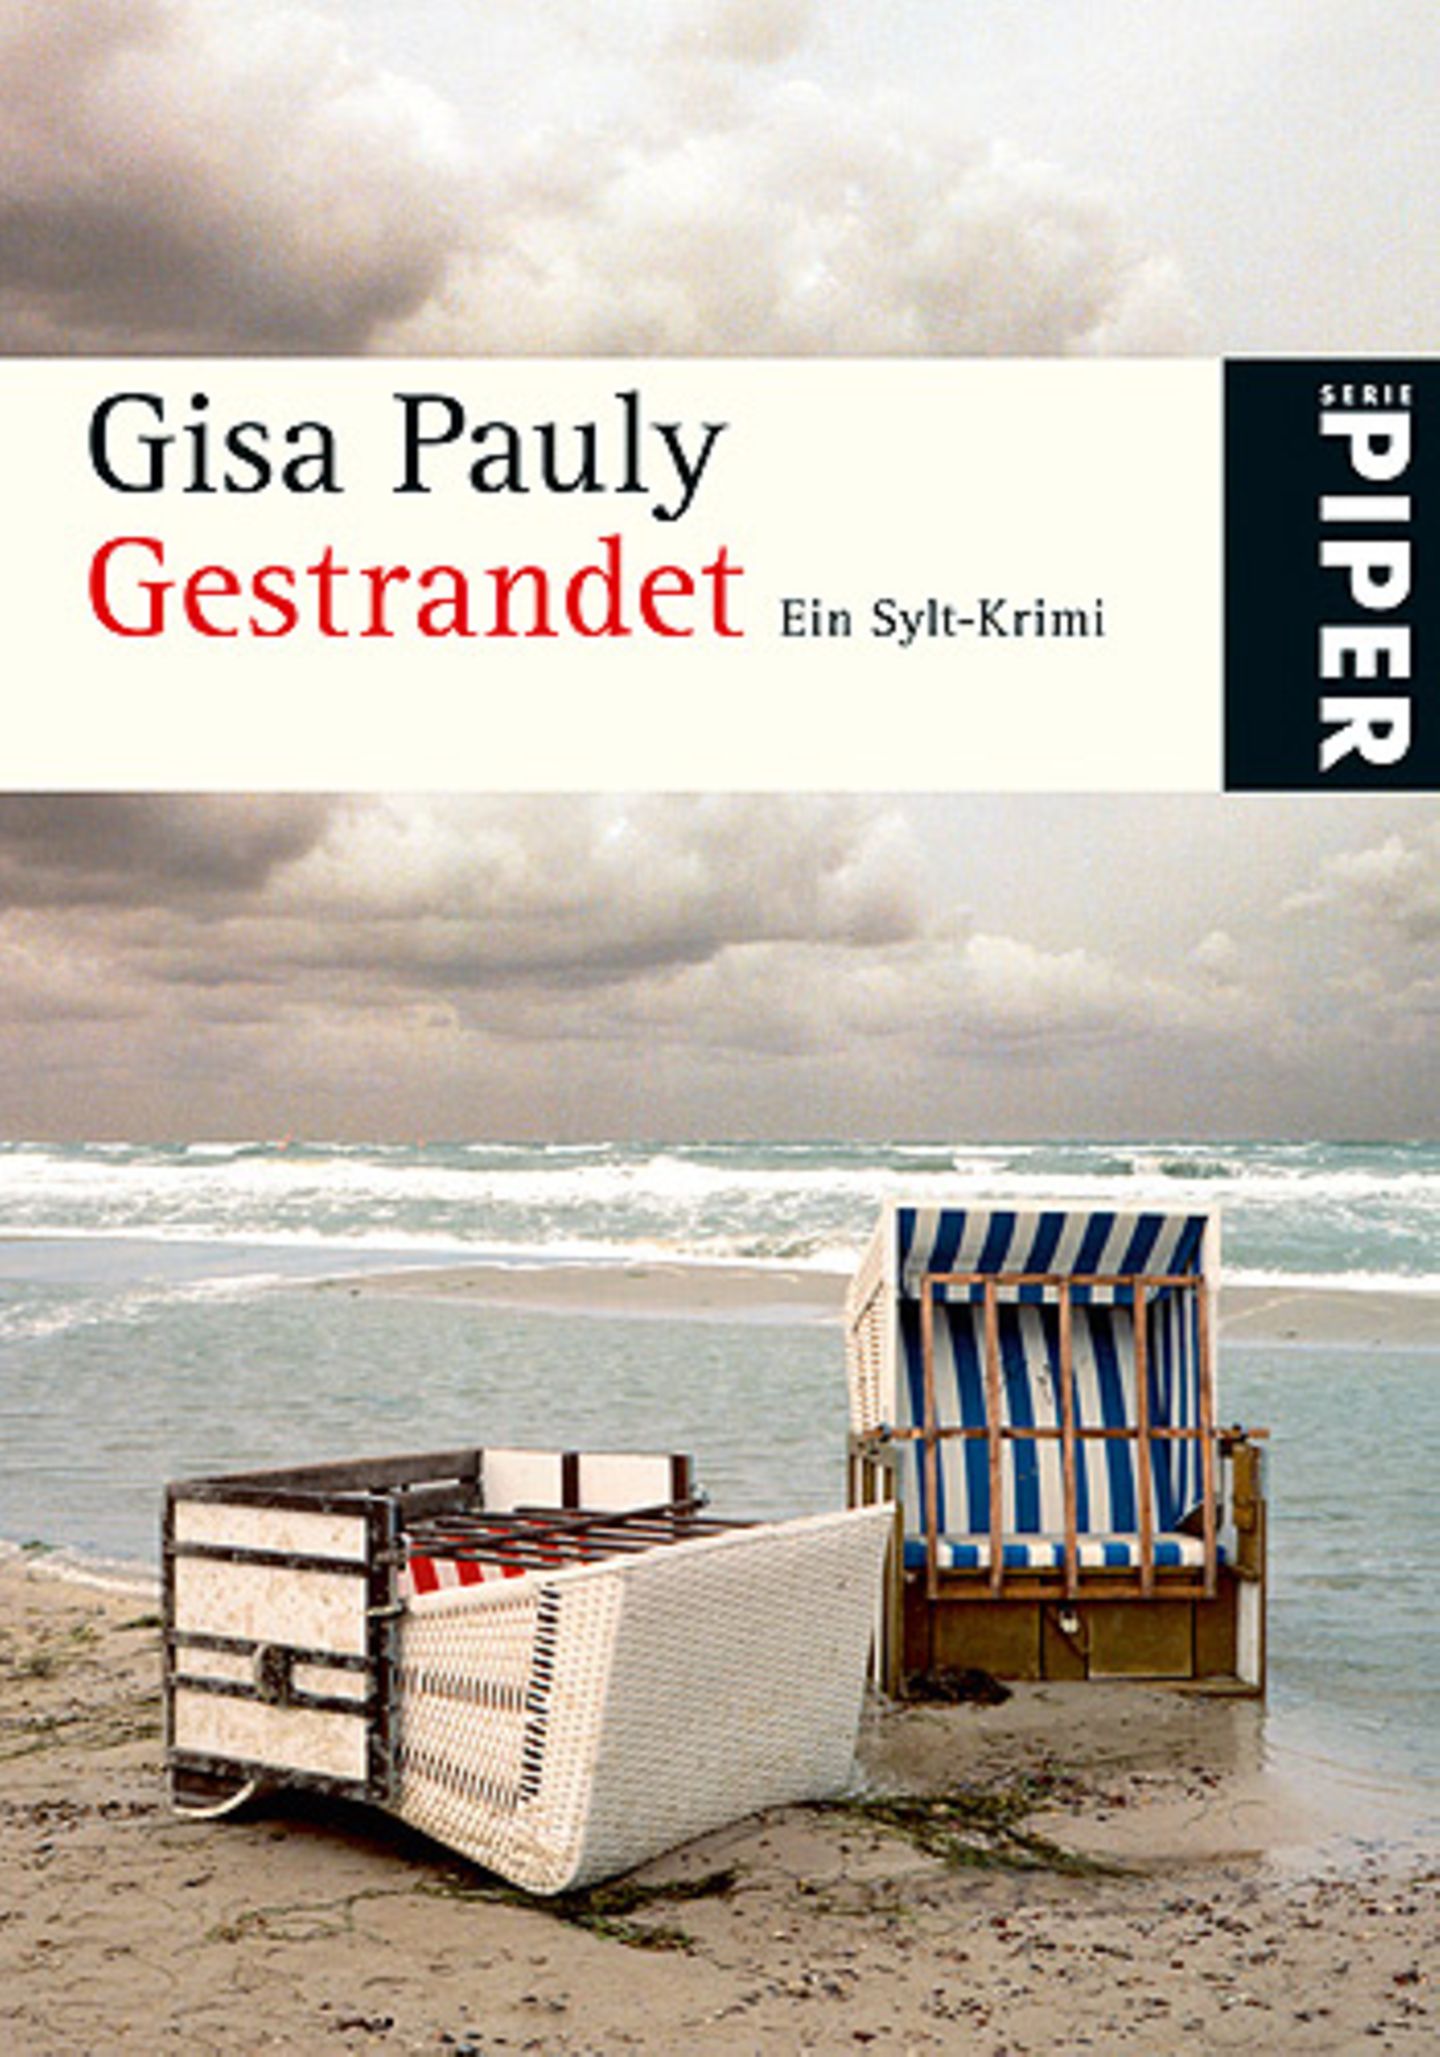 Sylt-Krimi "Gestrandet" von Gisa Pauly über Amazon.de, 8,95 Euro